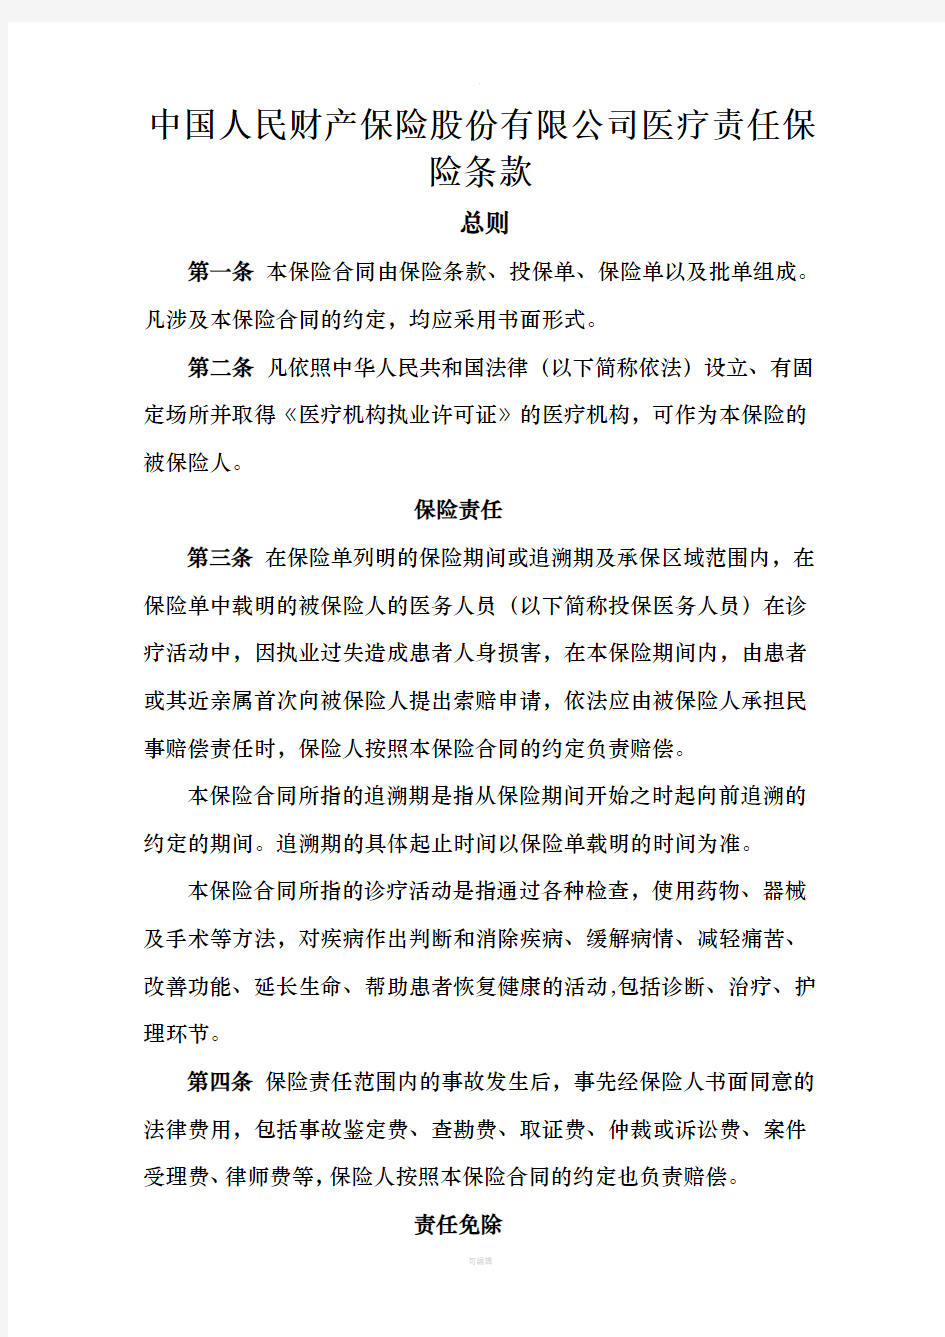 中国人民财产保险股份有限公司医疗责任保险条款